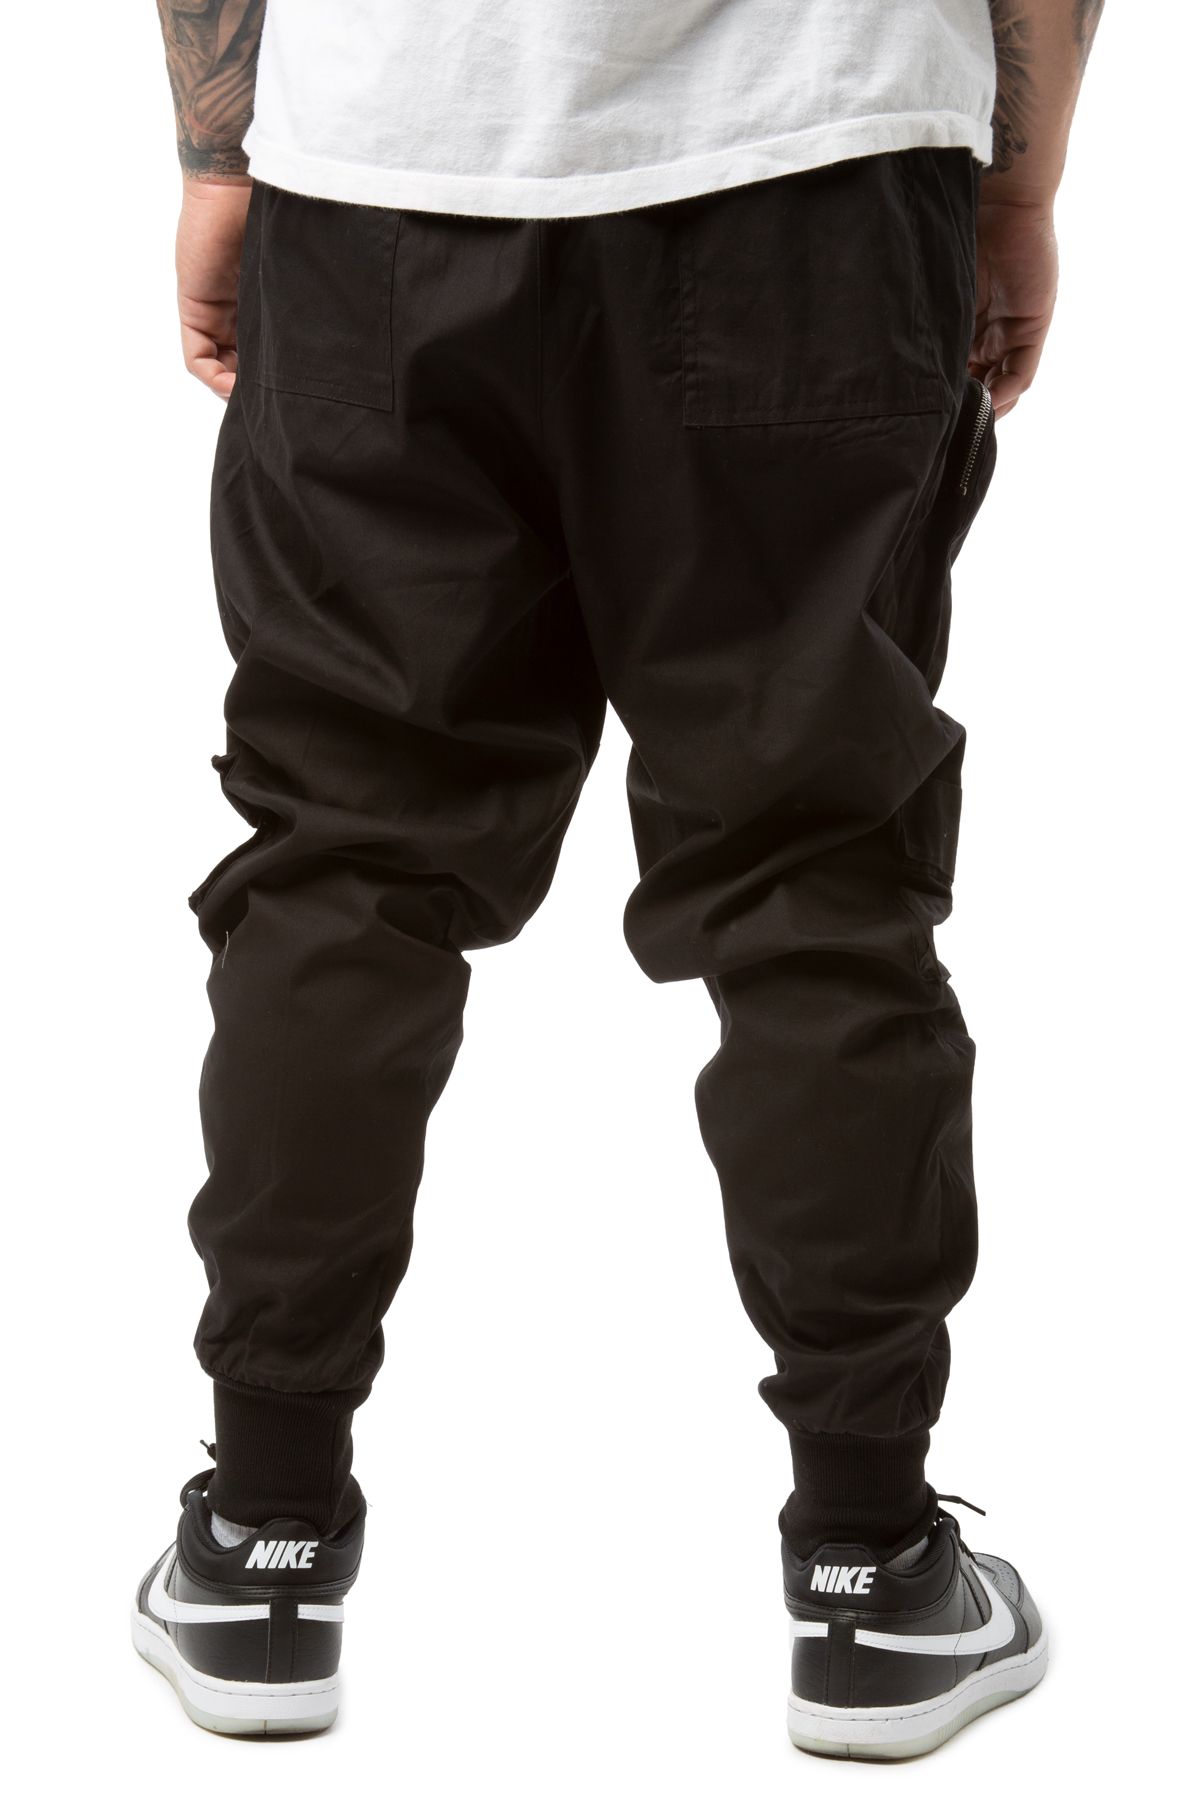 3000円 でおすすめアイテム。 専用3D pocket zip design cargo pants